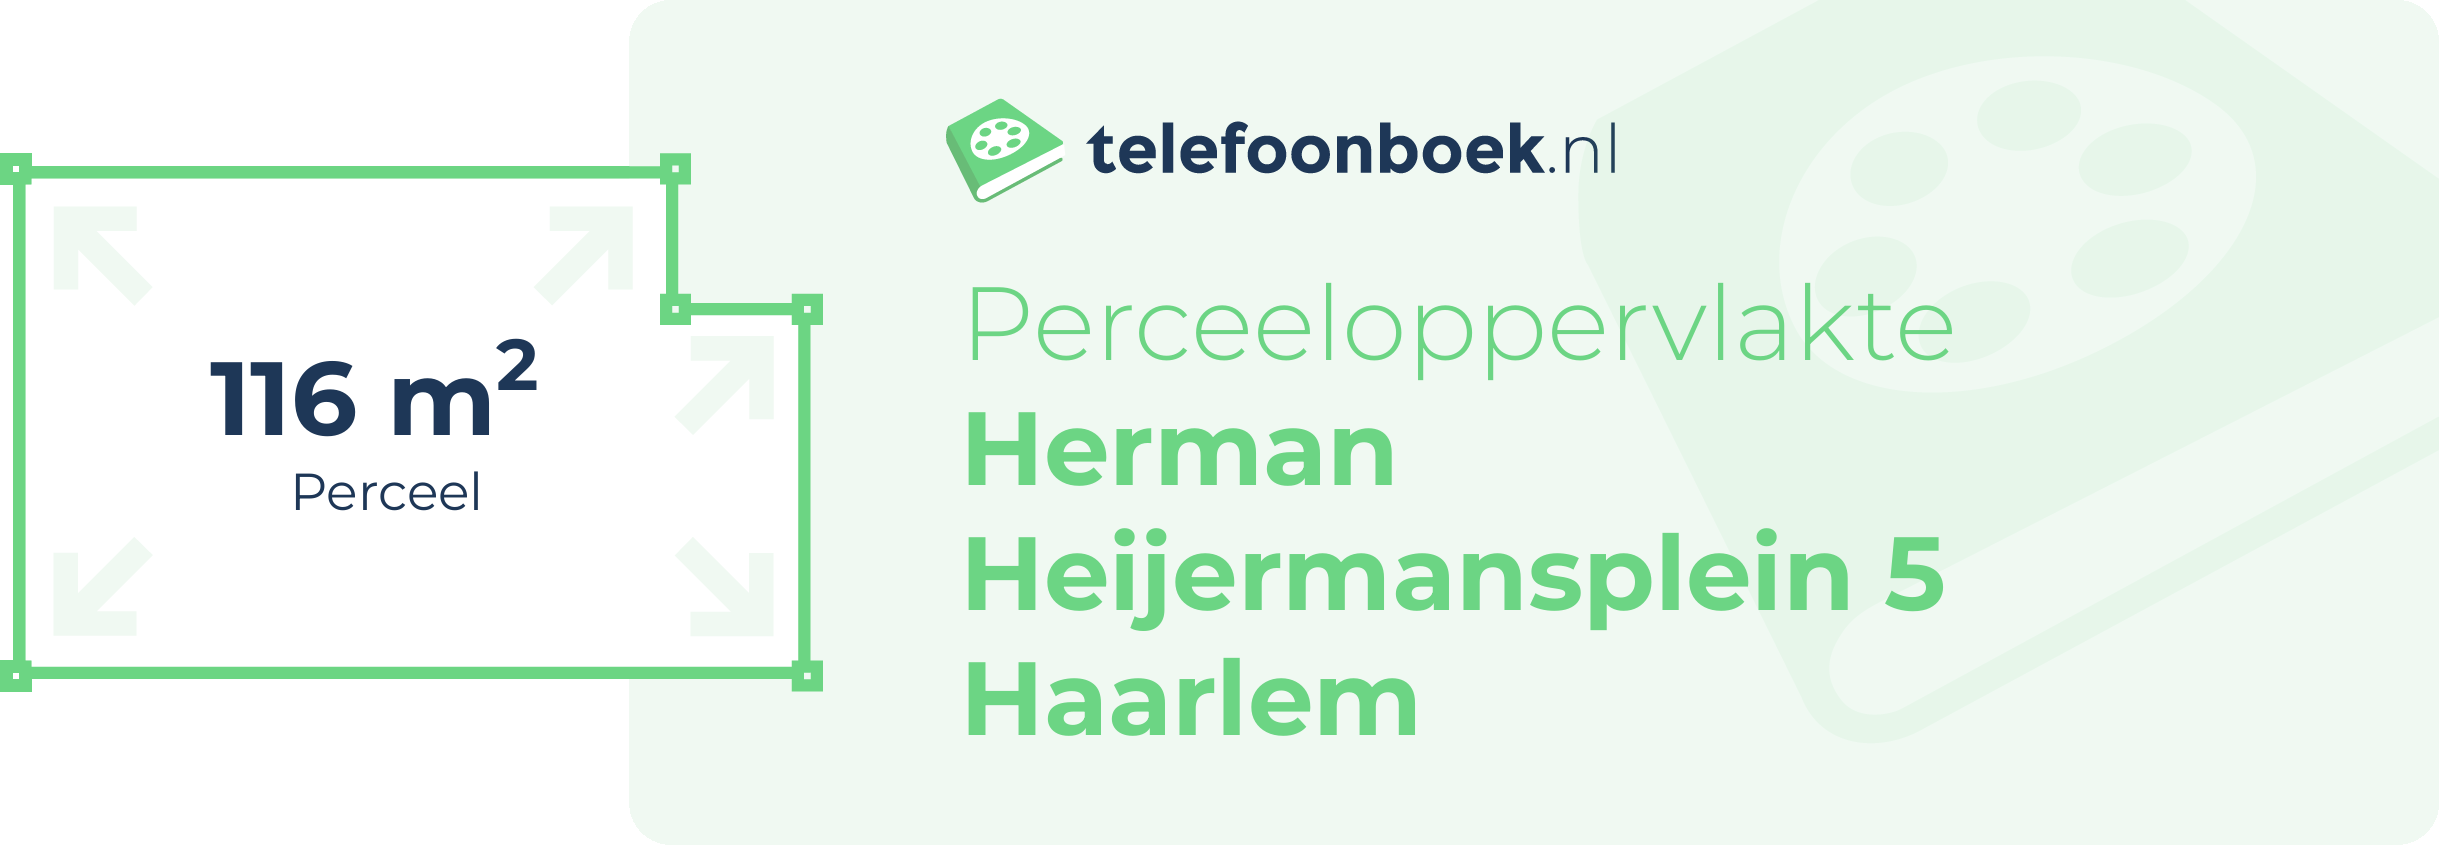 Perceeloppervlakte Herman Heijermansplein 5 Haarlem